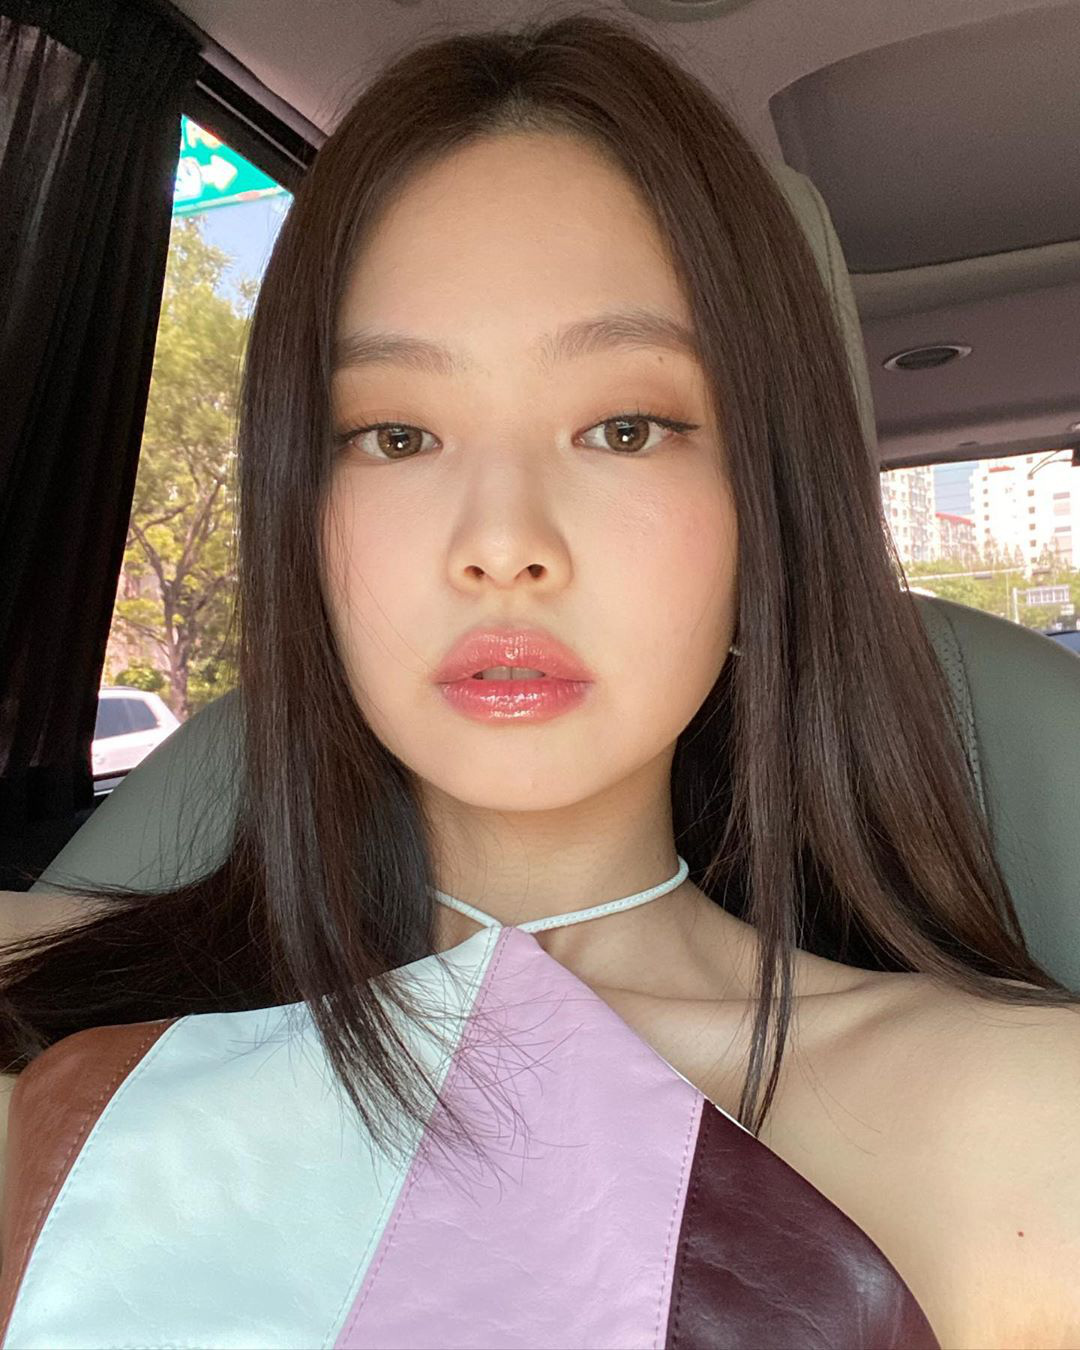 Chuyên gia sắc đẹp: Cùng theo dõi các chuyên gia sắc đẹp và stylist tại Hàn Quốc dành cho Jennie để tìm hiểu những bí quyết giúp cô nàng luôn tự tin với vẻ đẹp của mình.